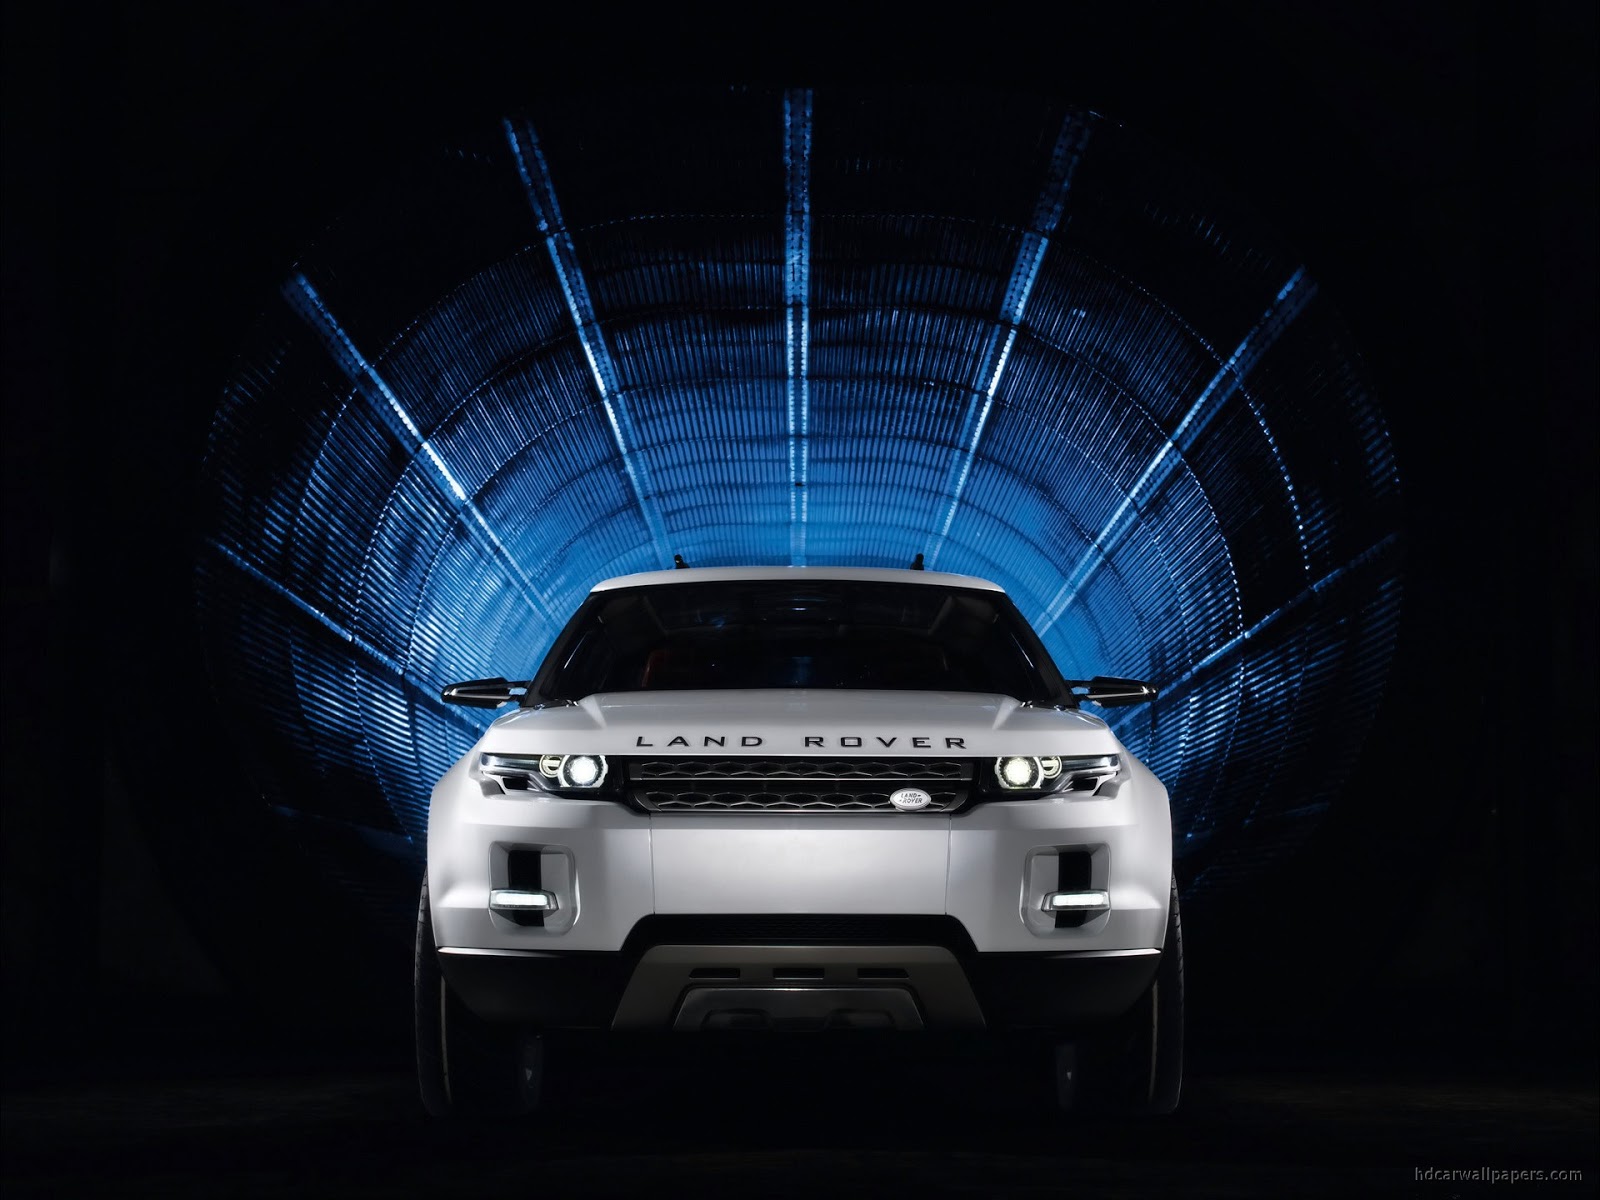 Land Rover Lrx Concept 5 Wallpapers - HD Wallpaper Pics